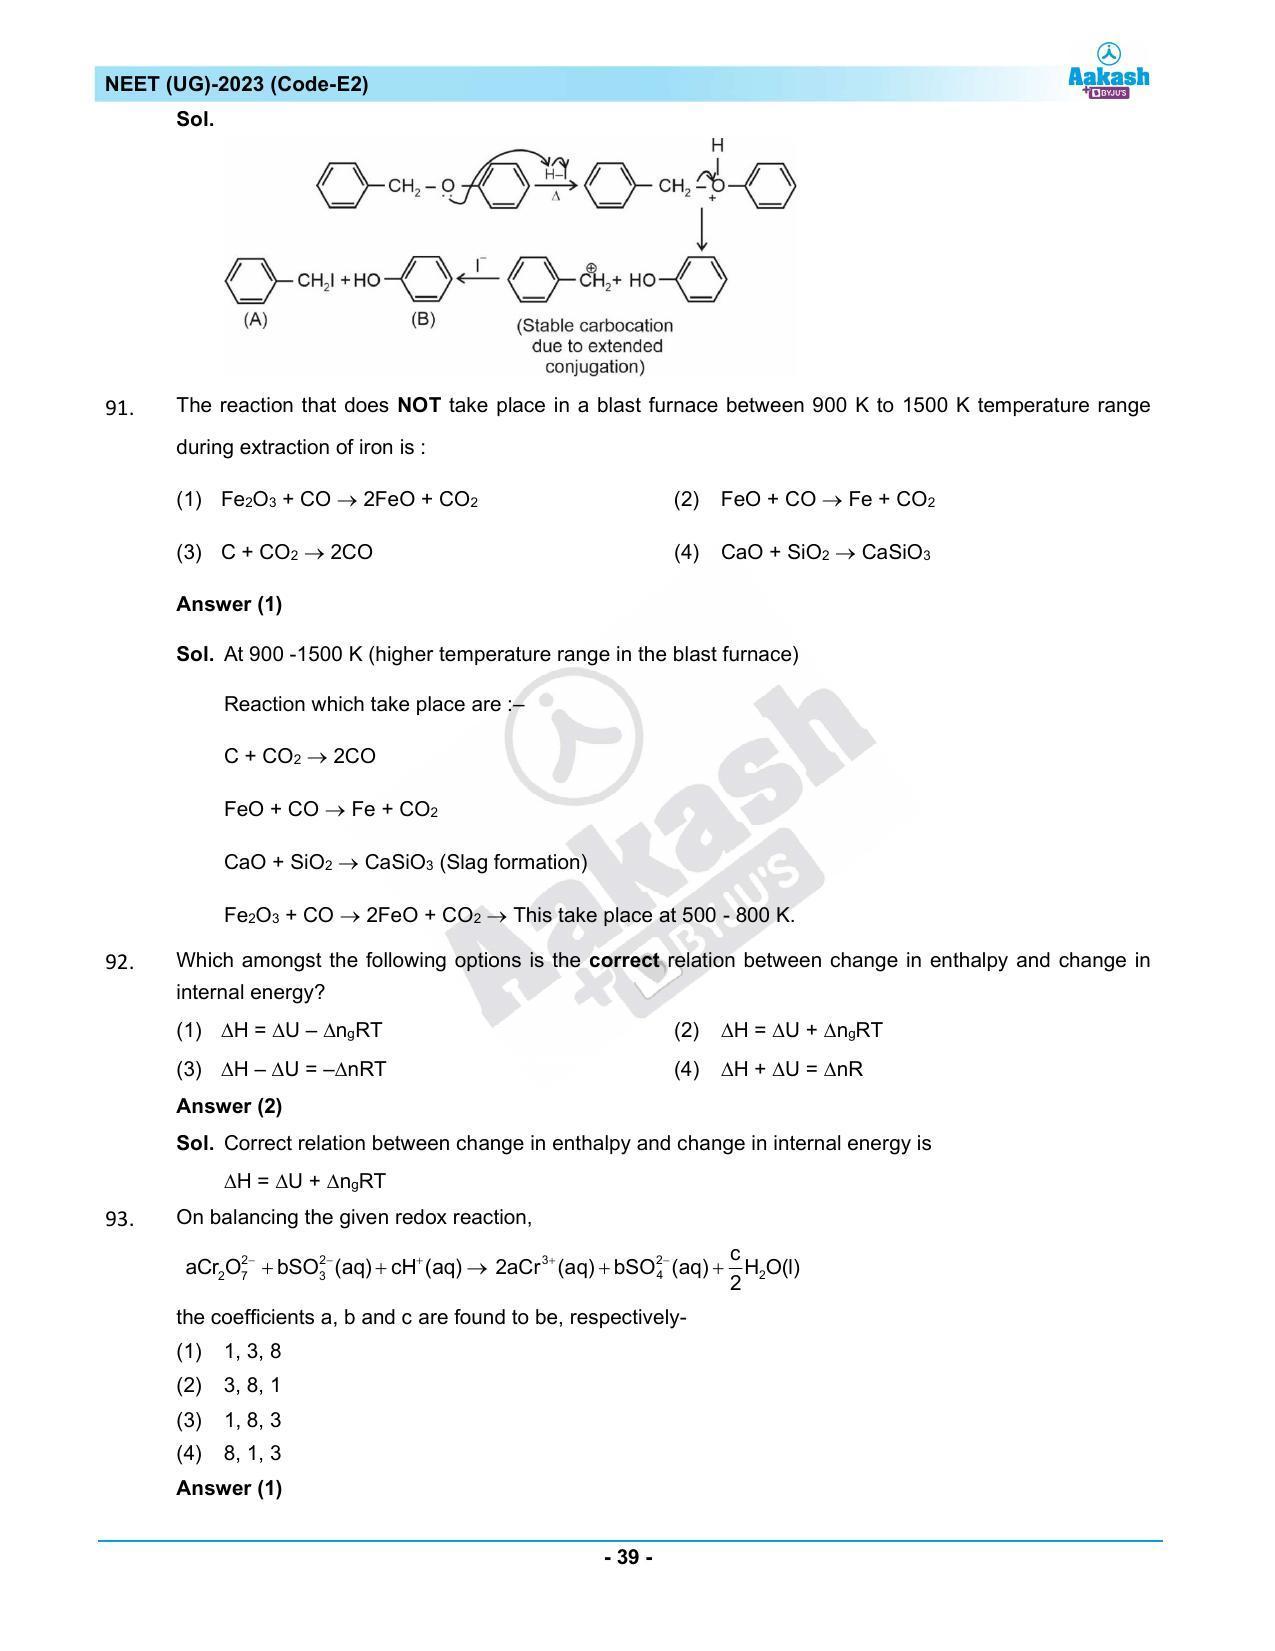 NEET 2023 Question Paper E2 - Page 39